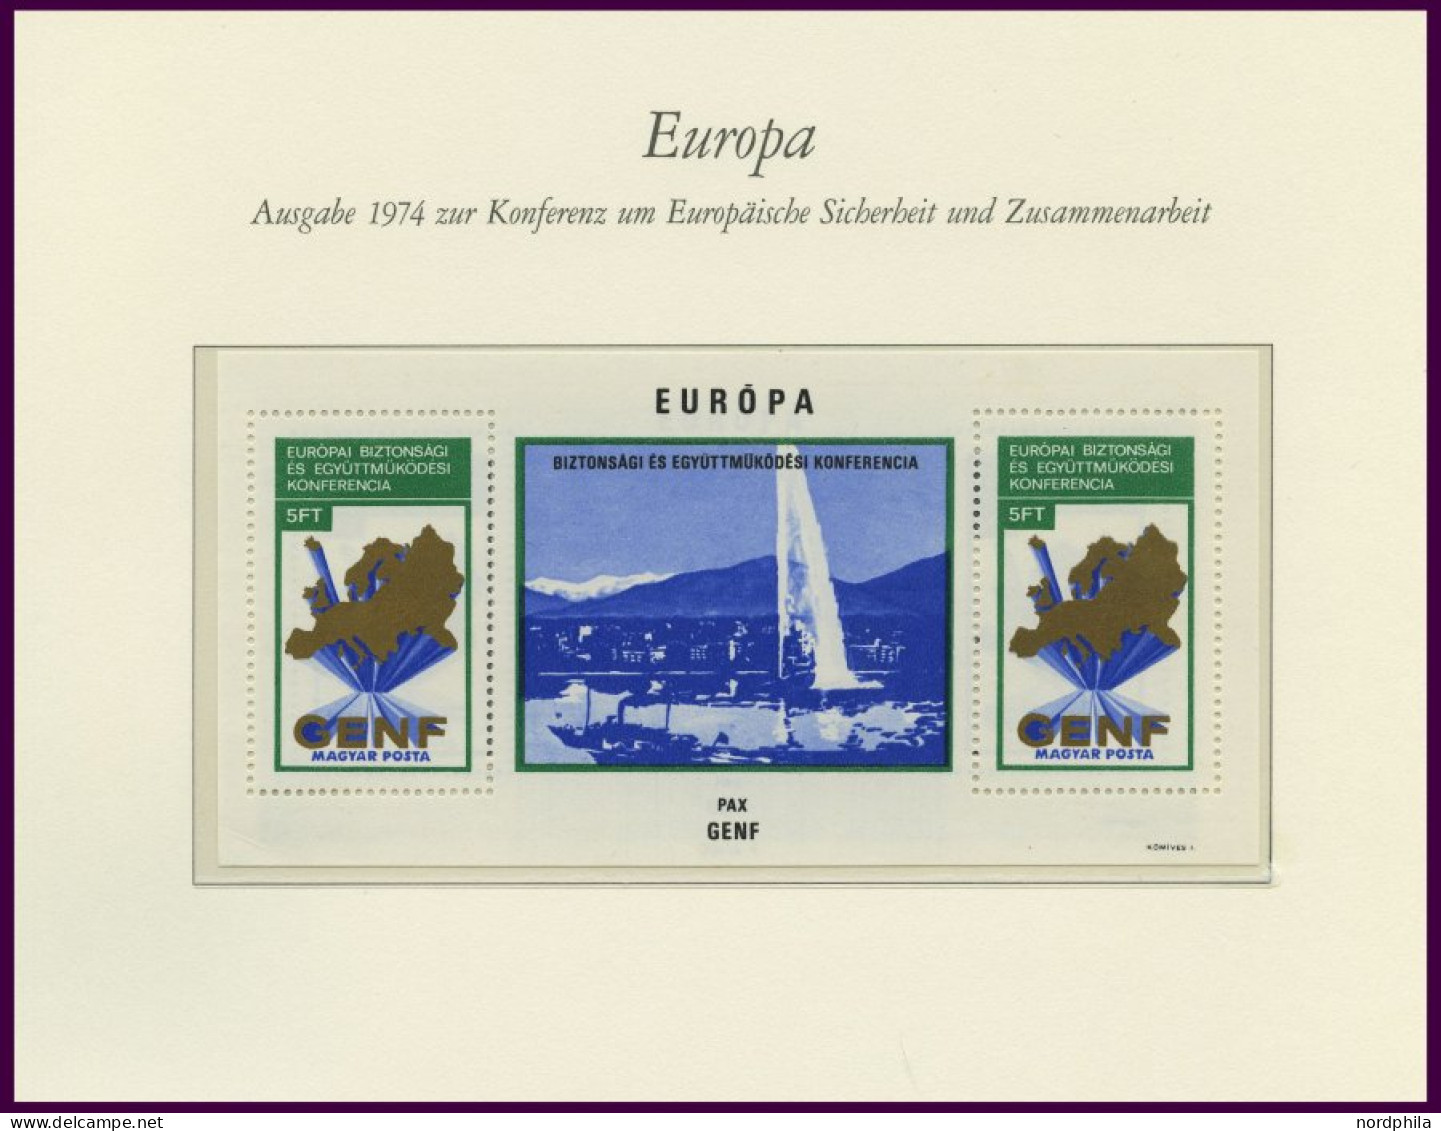 EUROPA UNION , Postfrische Sammlung KSZE Von 1973-83 Auf Borek Falzlosseiten, Mit Bulgarien Bl. 106, Rumänien Bl. 125 Un - Collections